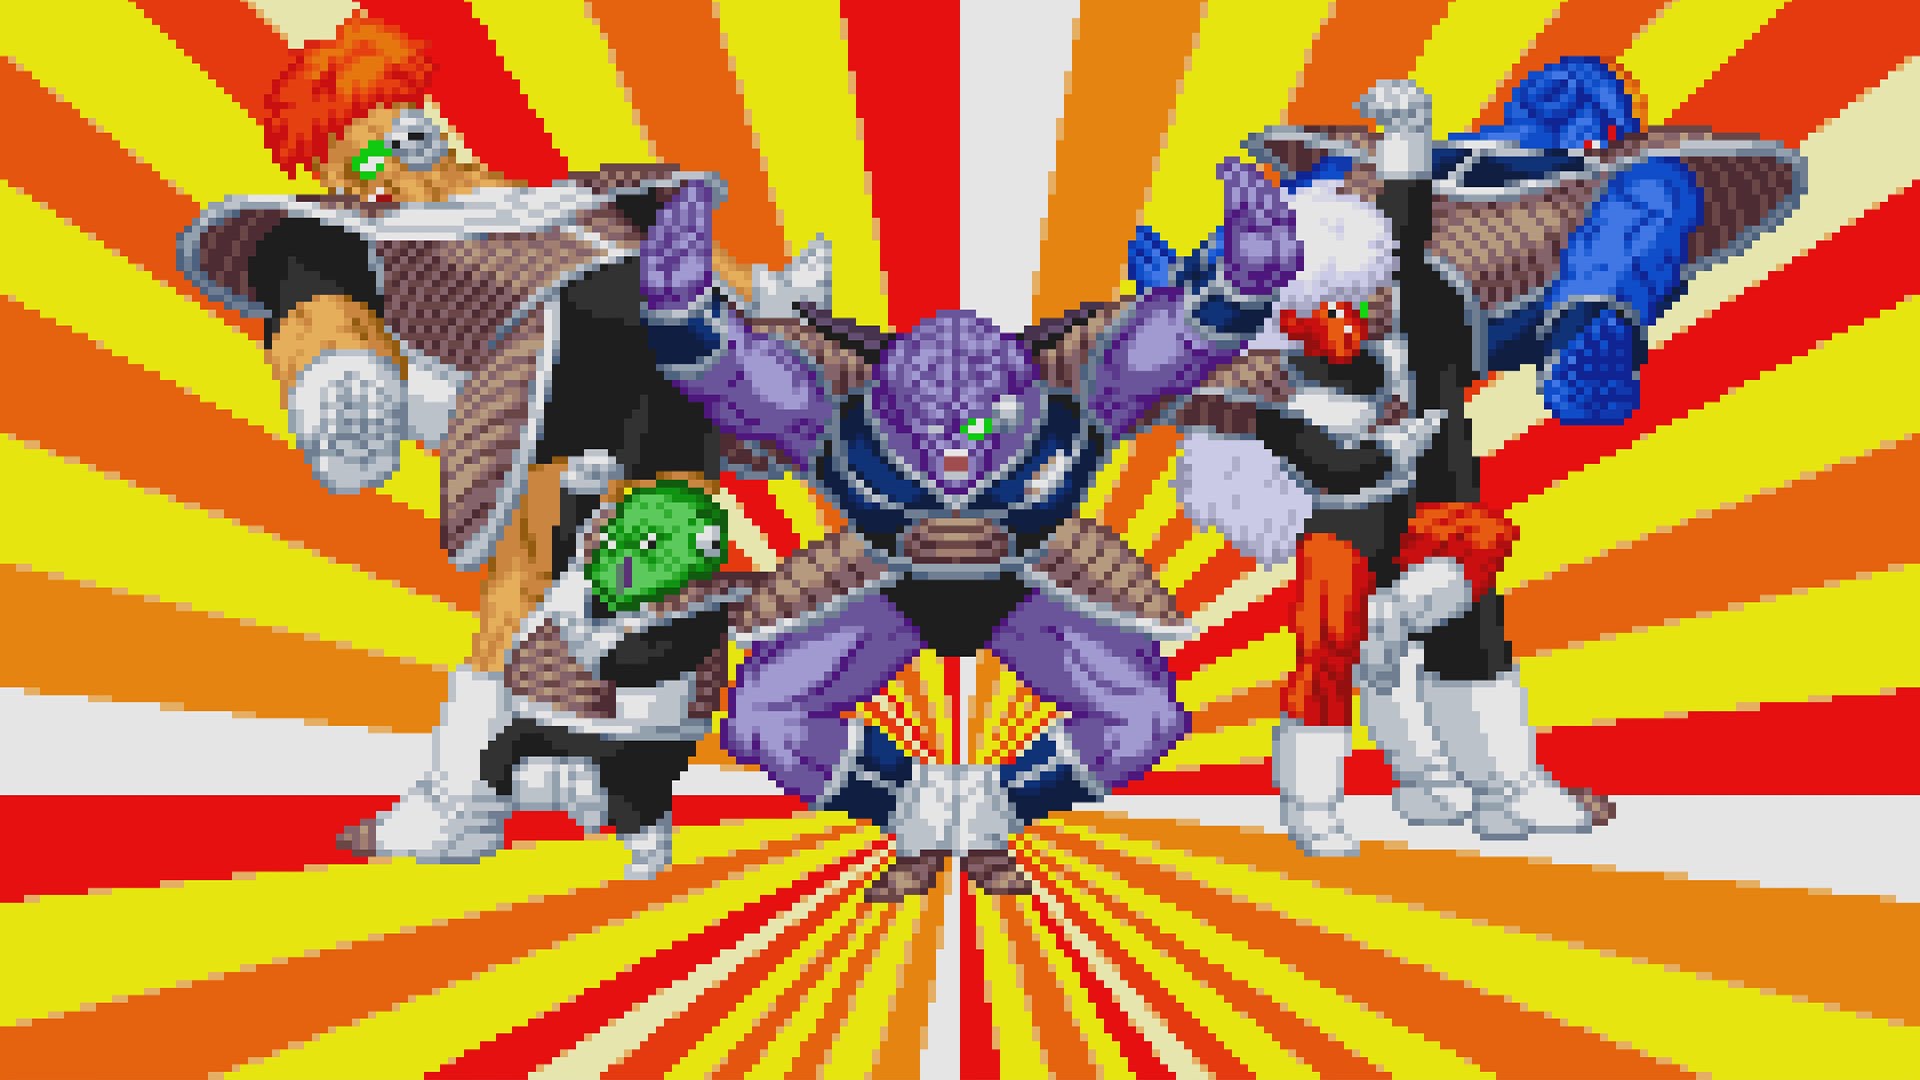 Dragon Ball Z: Supersonic Warriors HD wallpapers, Desktop wallpaper - most viewed